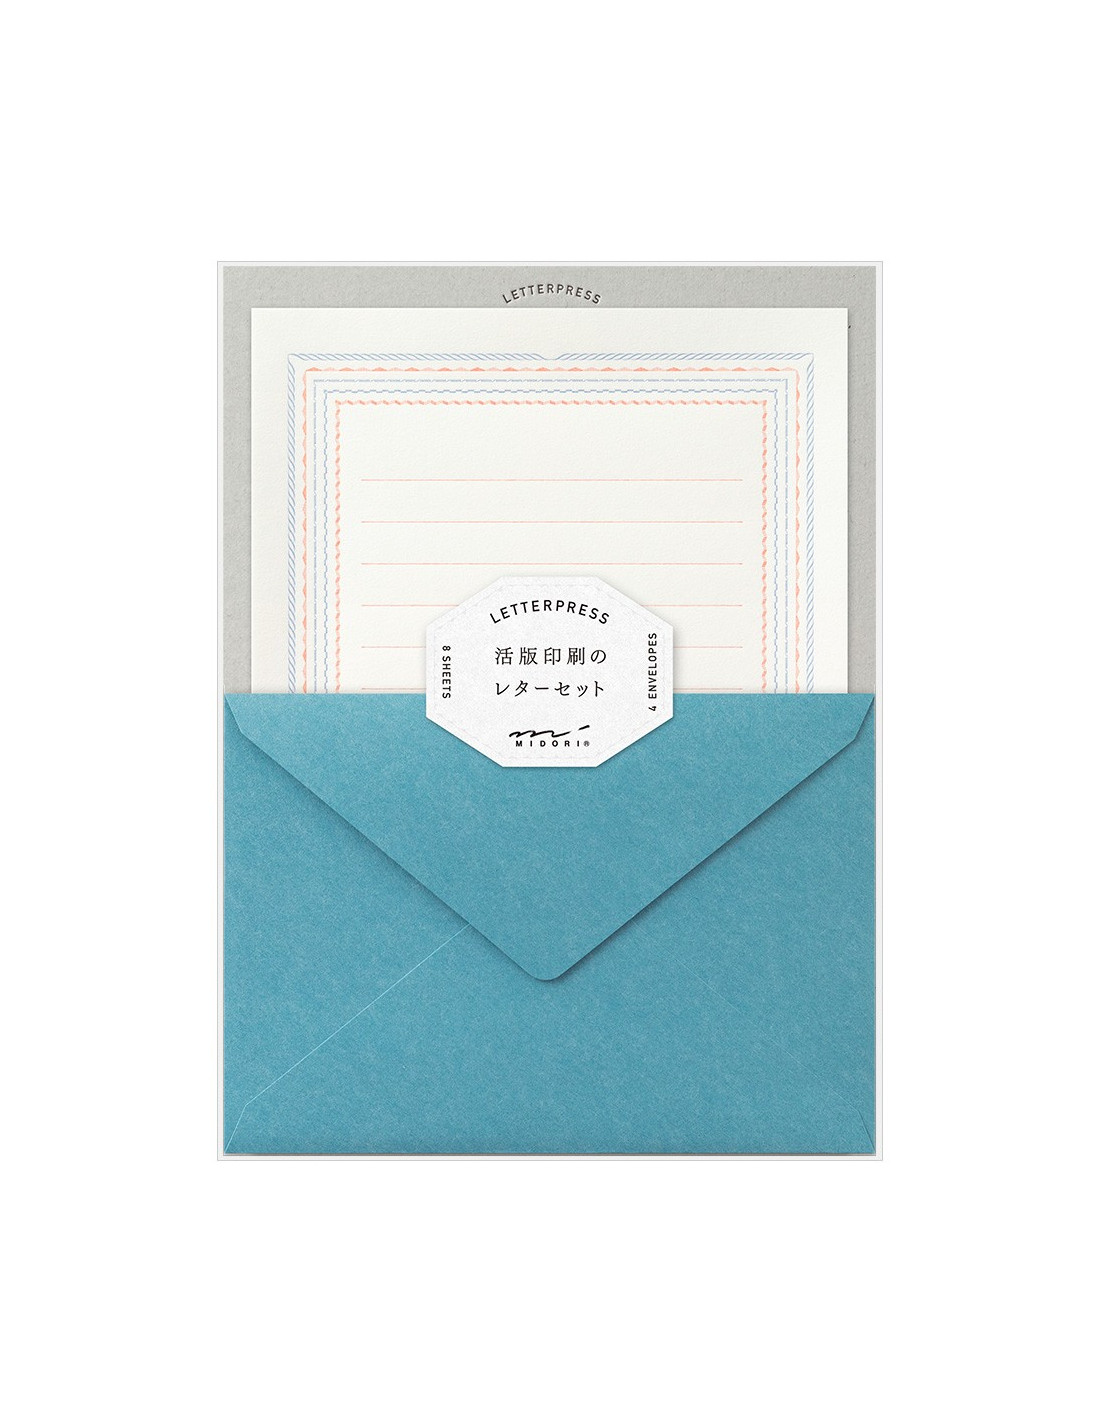 Lot de papier à lettre + enveloppes - Letterpress - Cadre fleuri - Midori